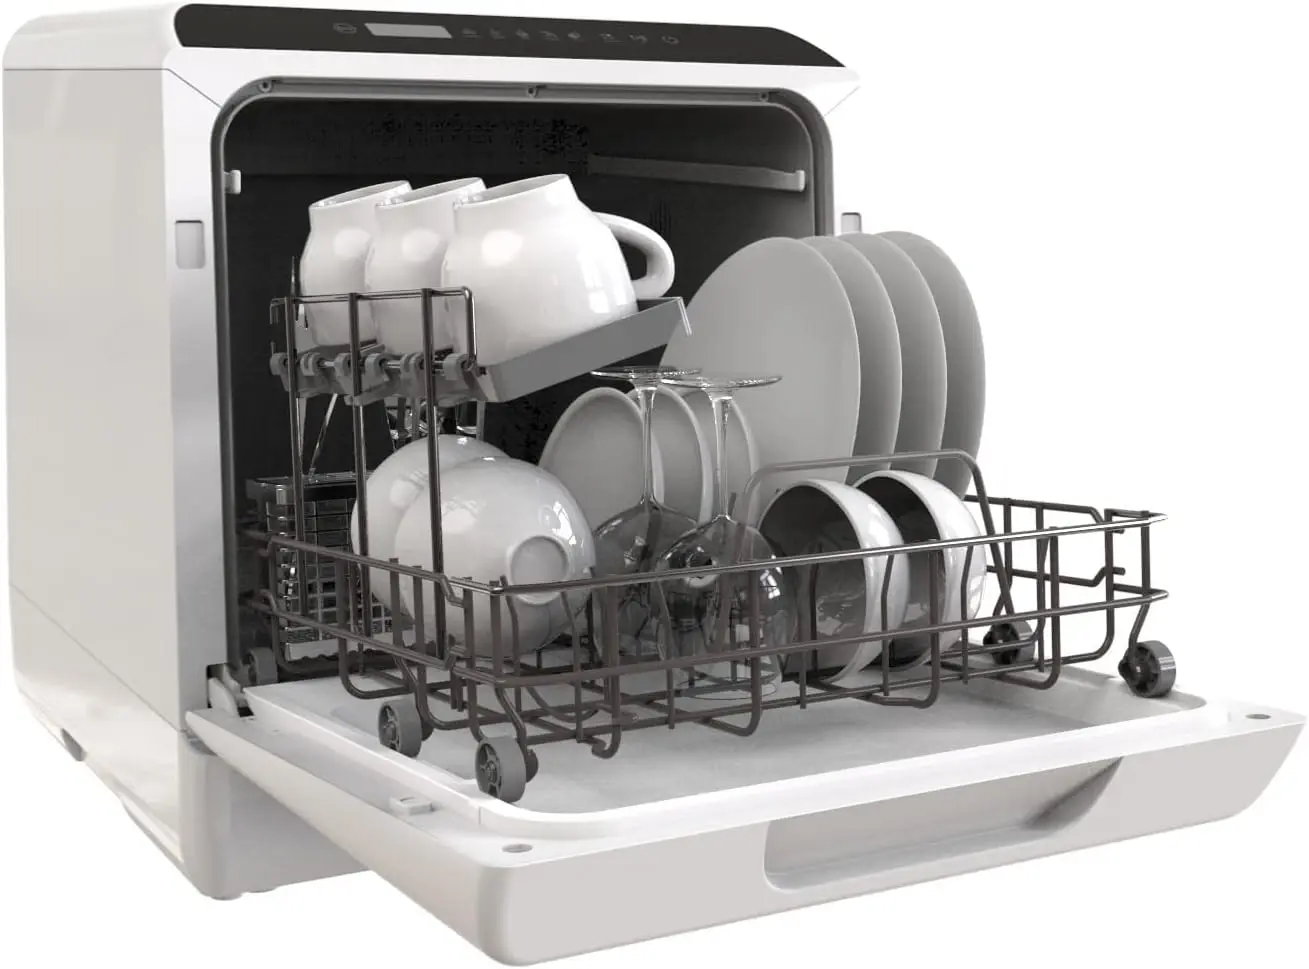 

Столешница для посудомоечной машины, 5 программ для мытья, небольшая посудомоечная машина с 5-литровым встроенным резервуаром для воды, уход за ребенком, функция сушки на воздухе и F